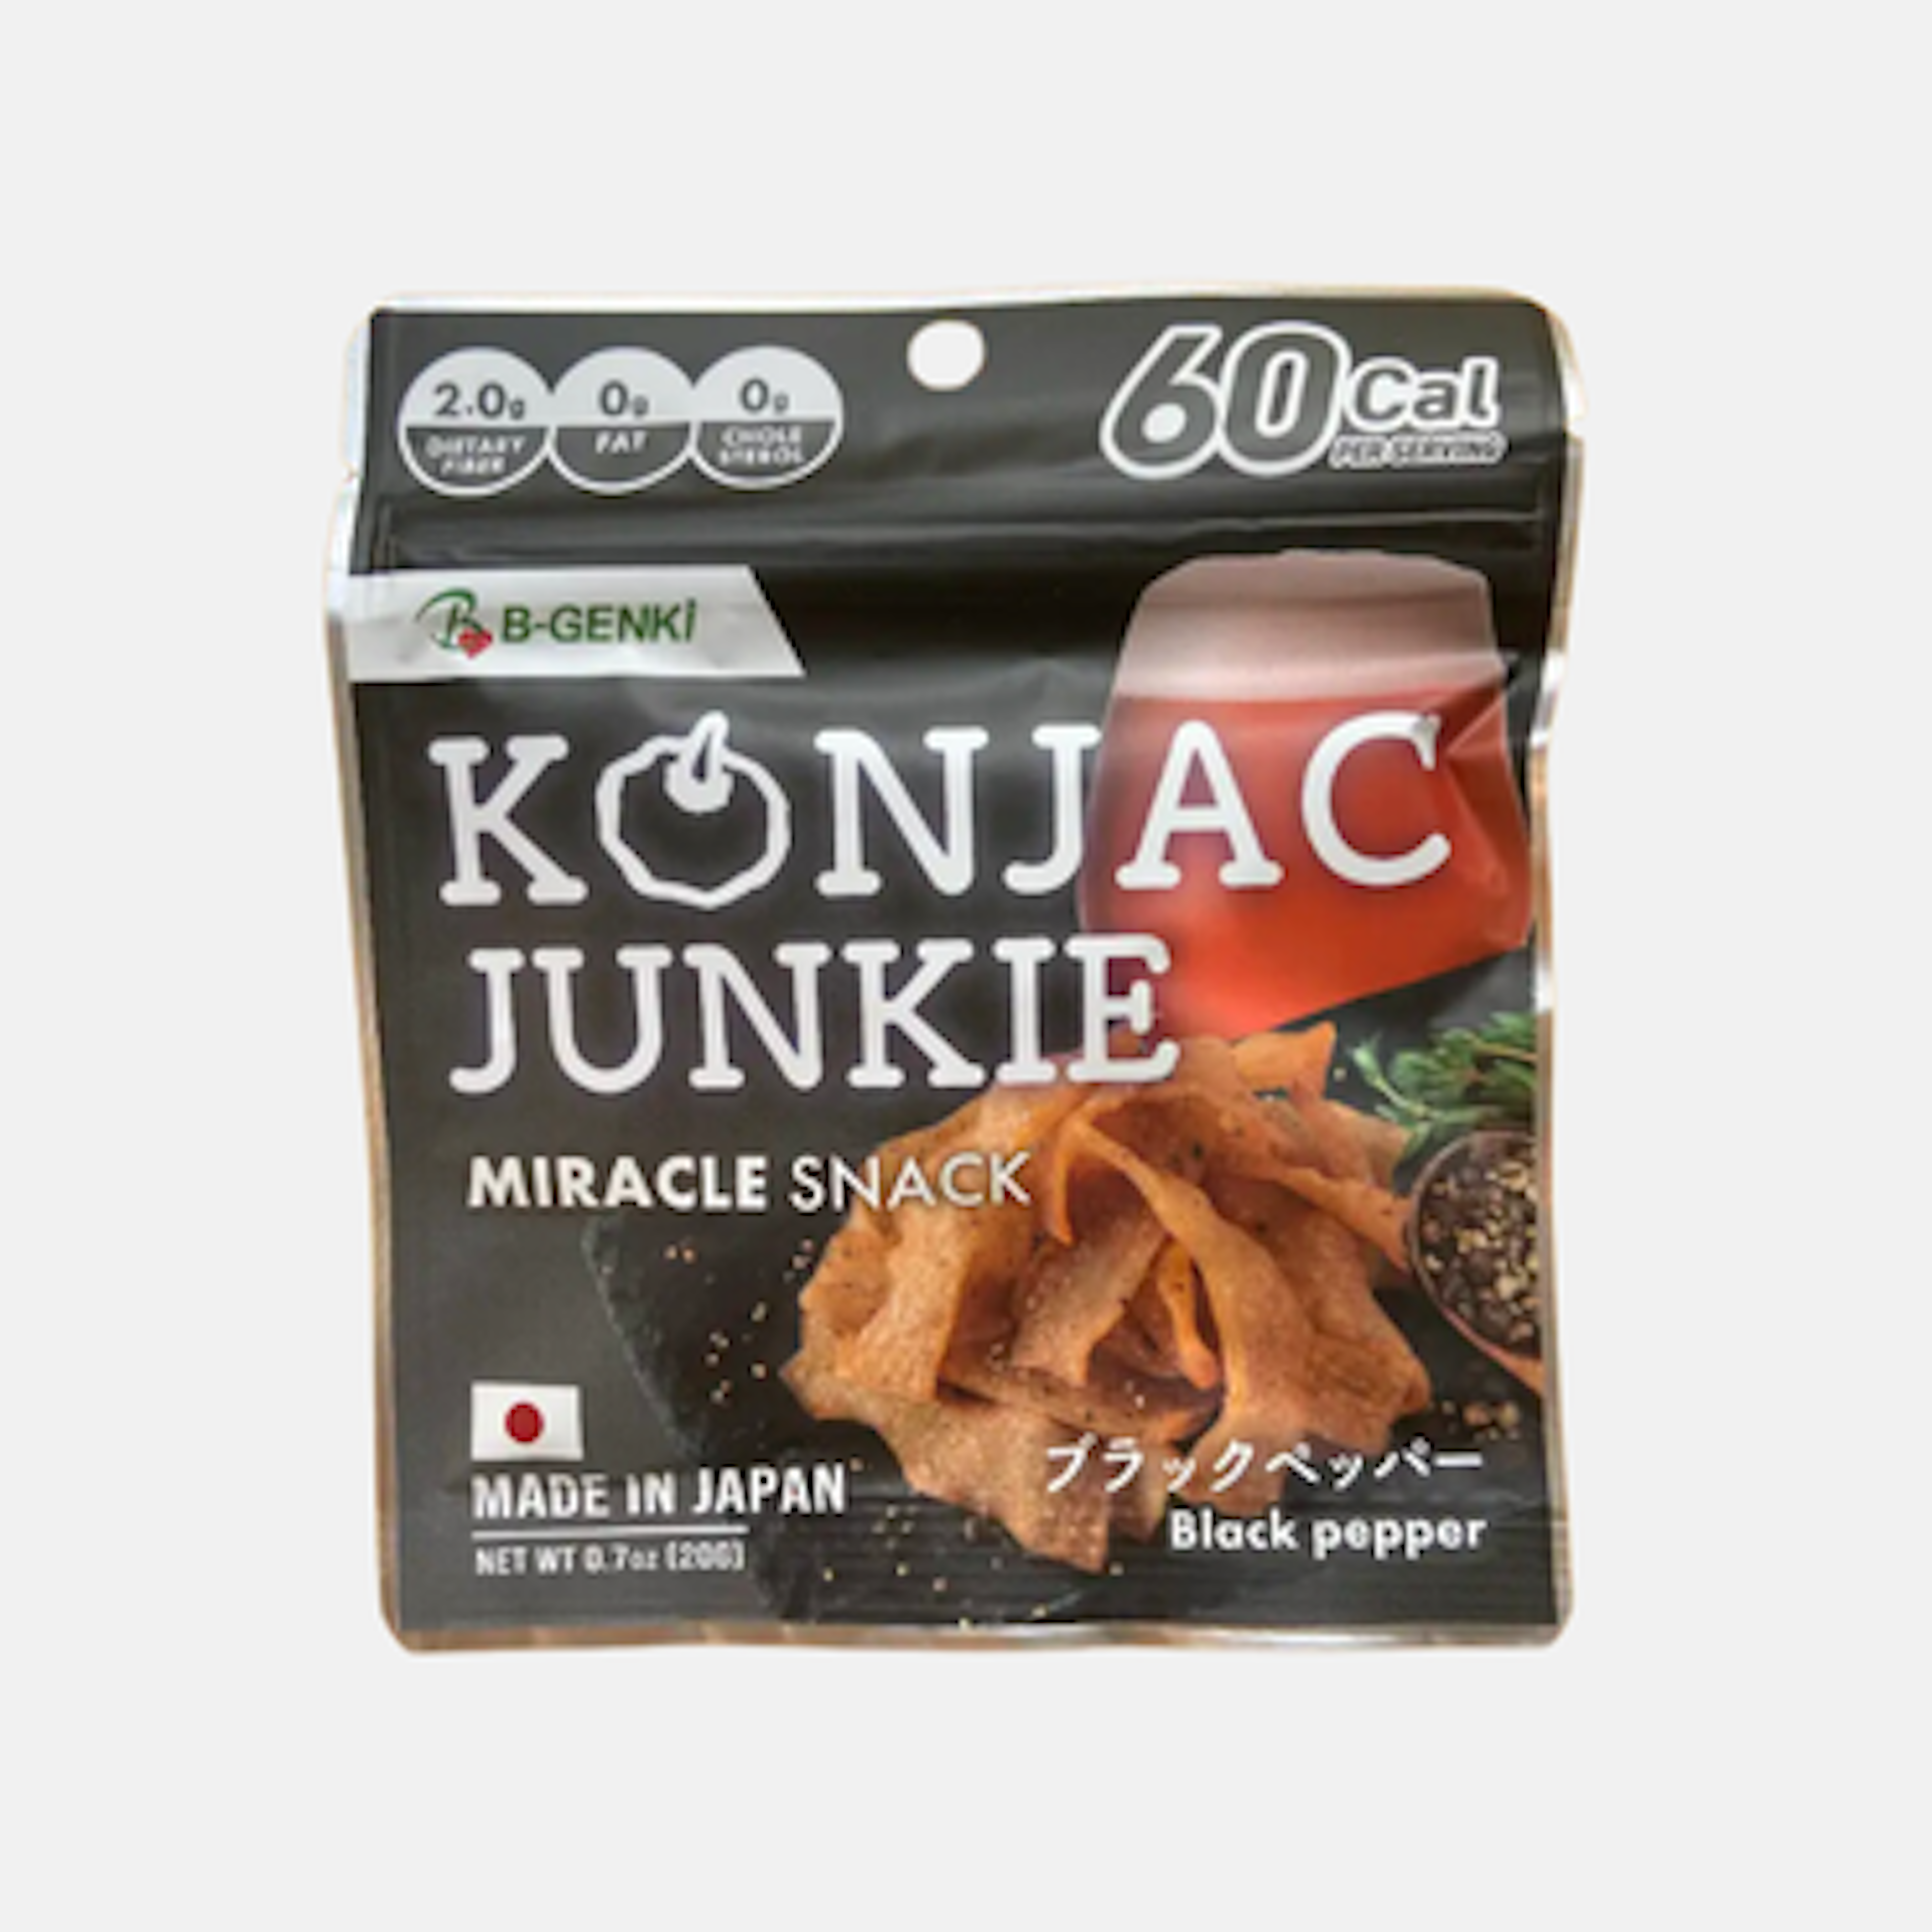 Marukin Konjac Junkie Black Pepper - Kalorienarmer und gesunder Konjak-Snack, 20g